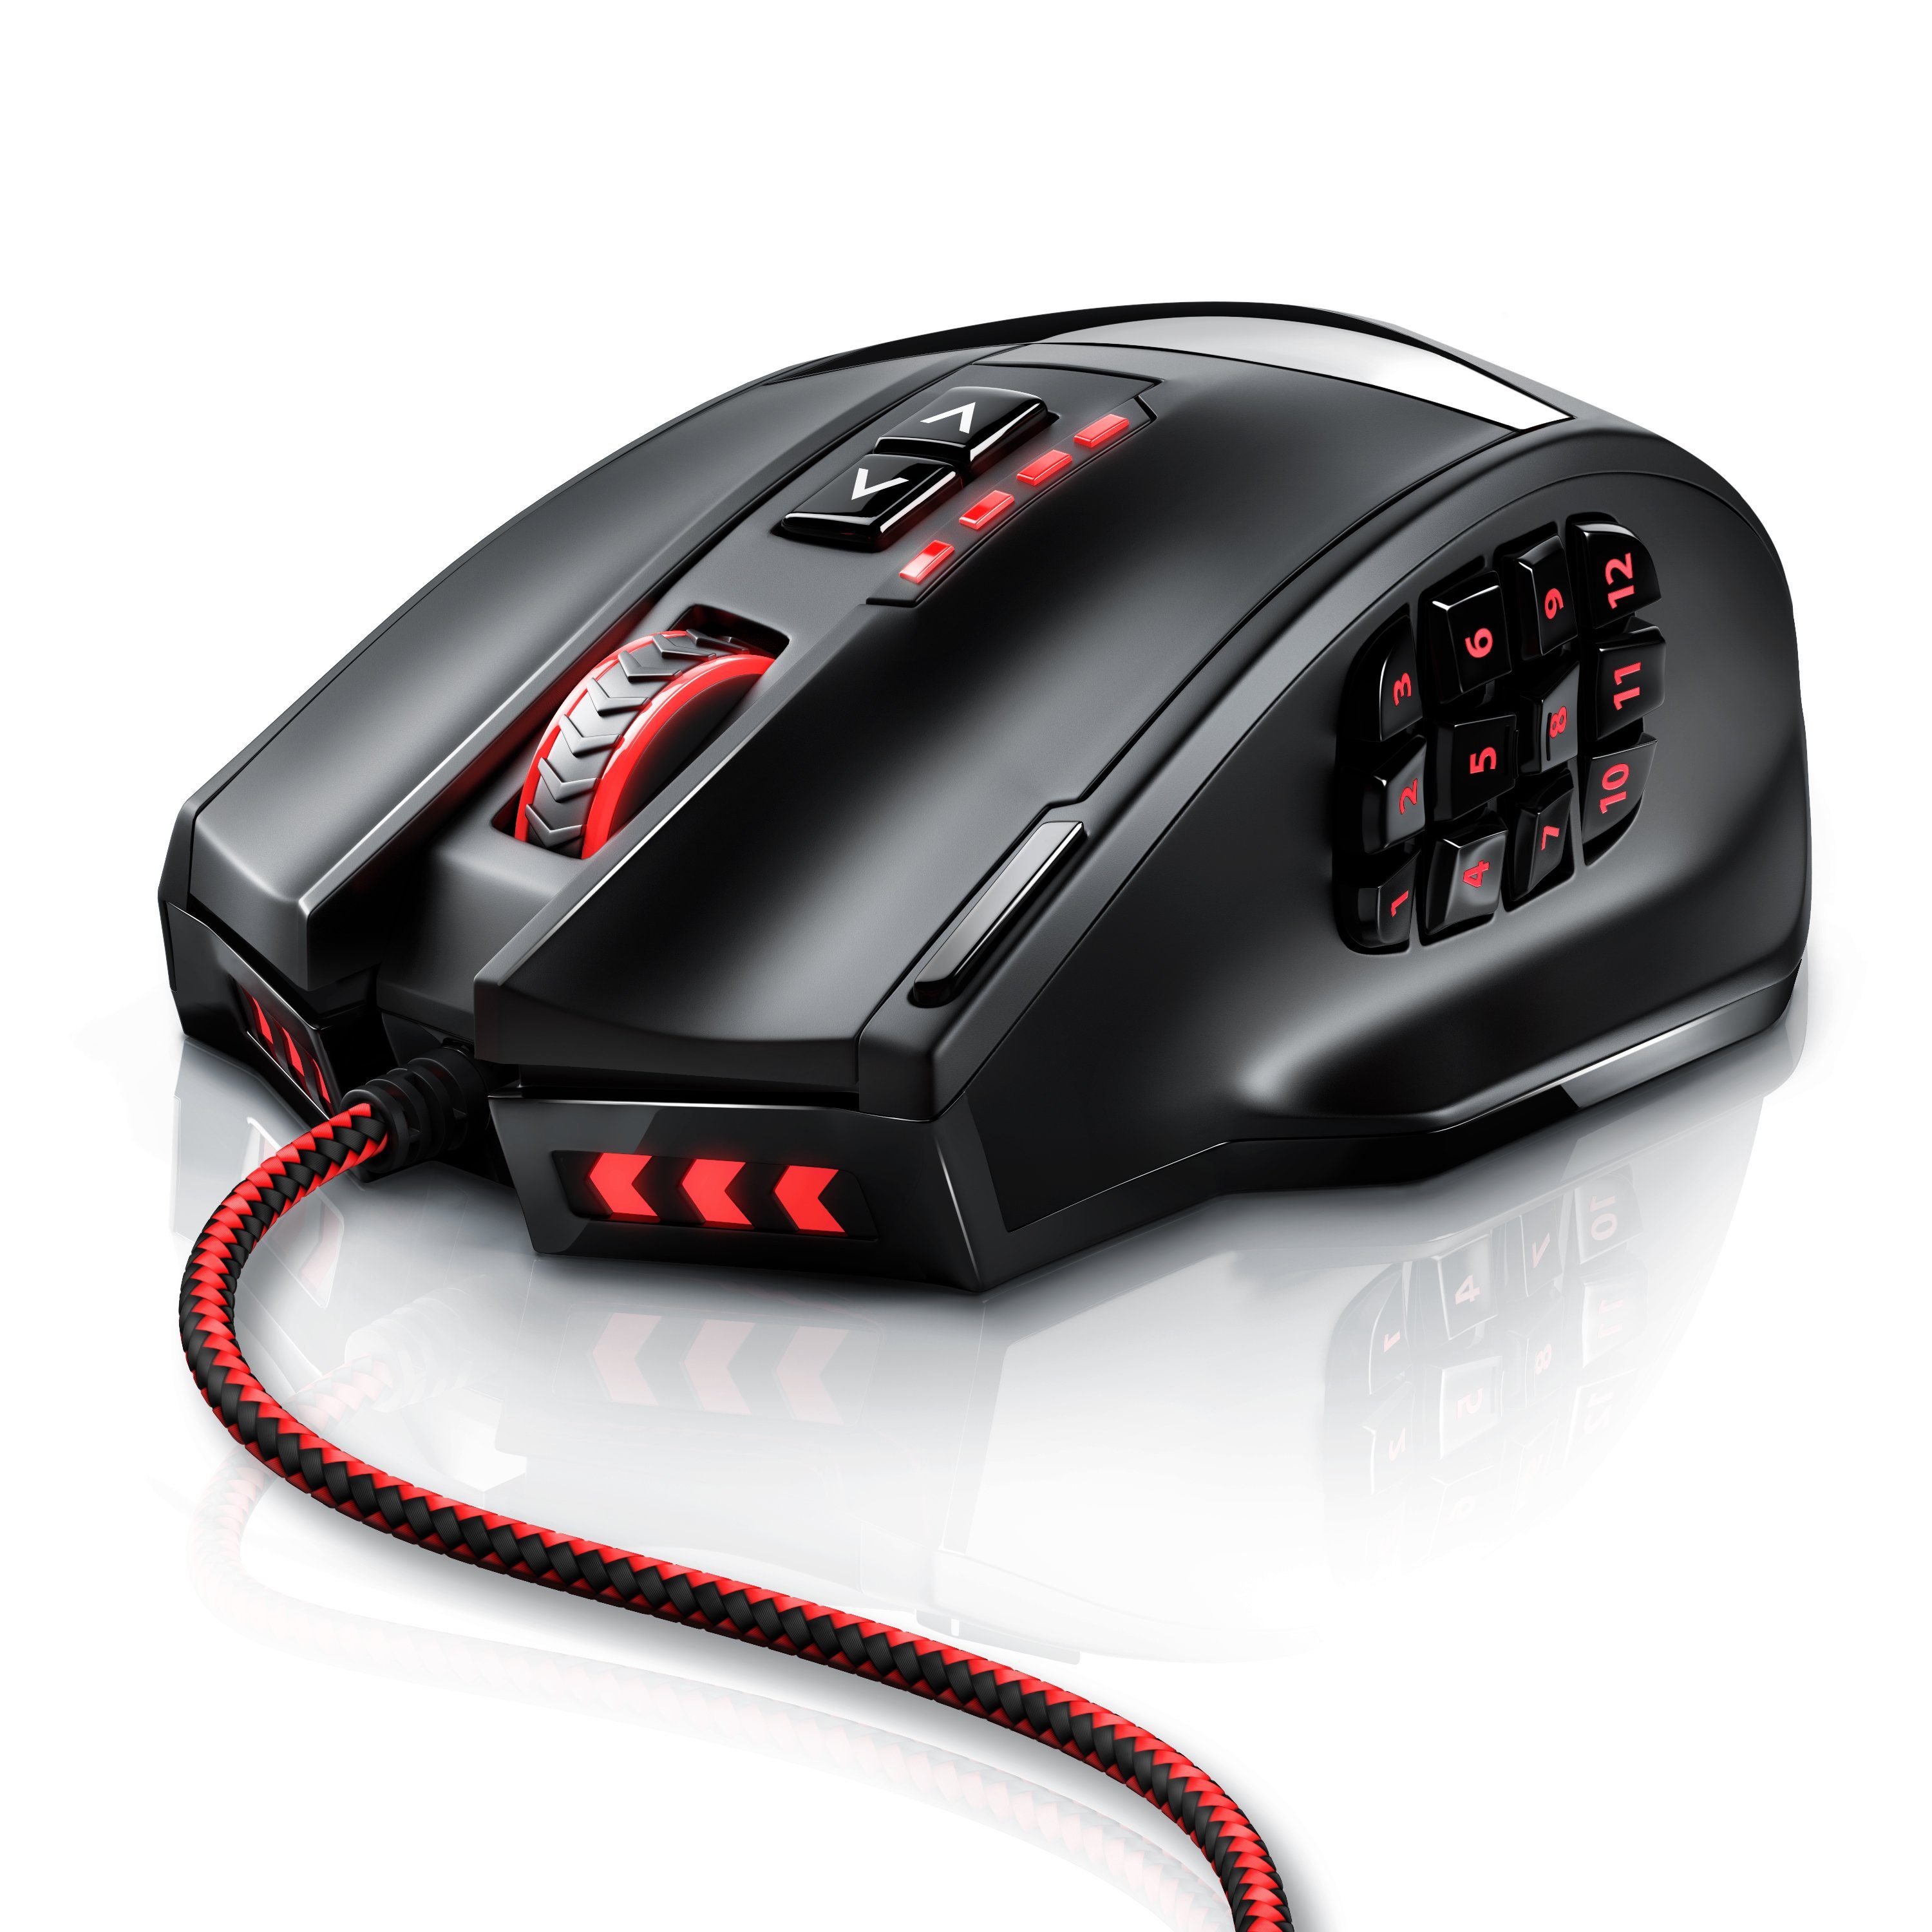 Gewichte) 18 MMO mit programmierbare Mouse USB Titanwolf 16400dpi, Gaming-Maus (kabelgebunden, dpi, Tasten, 1000